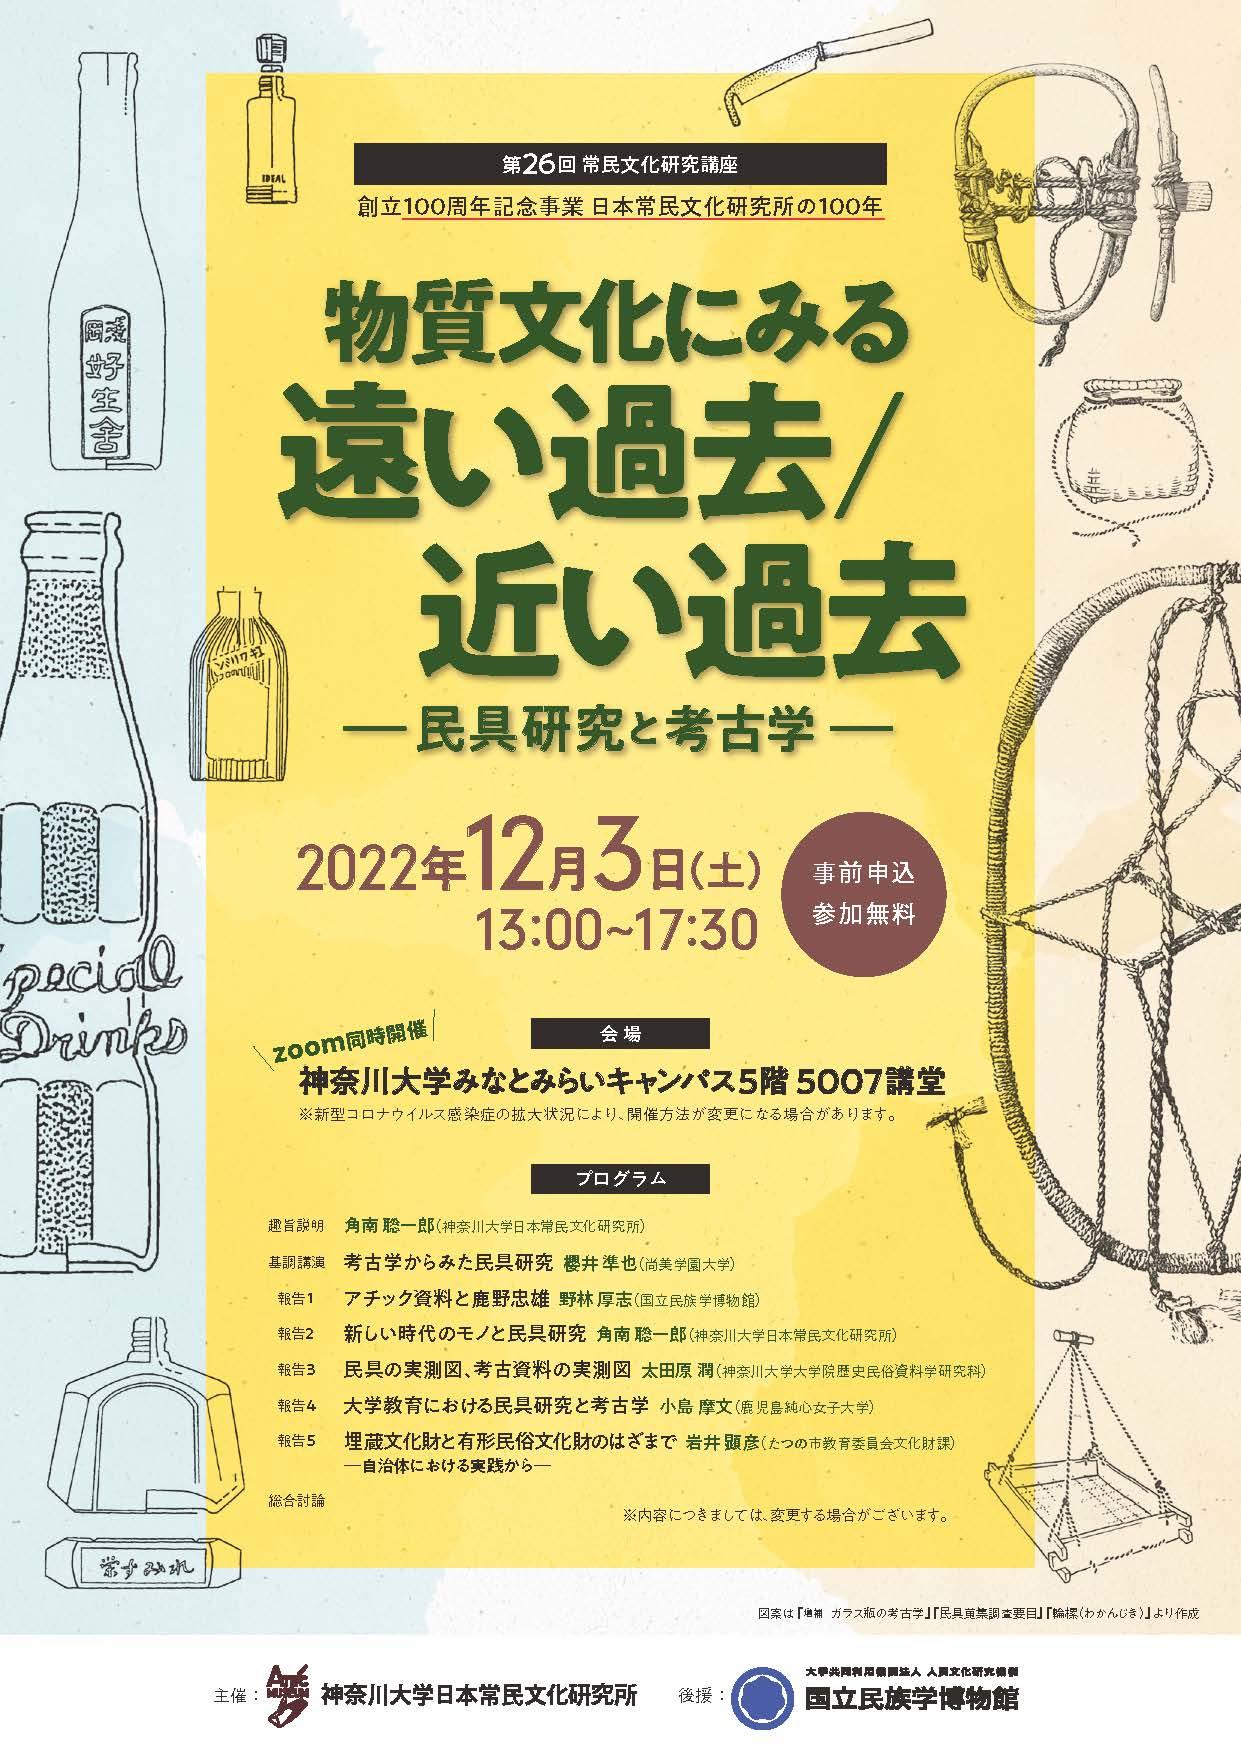 神奈川大学 常民研創立100周年 第26回常民文化研究講座「物質文化にみる遠い過去／近い過去」12月3日に開催